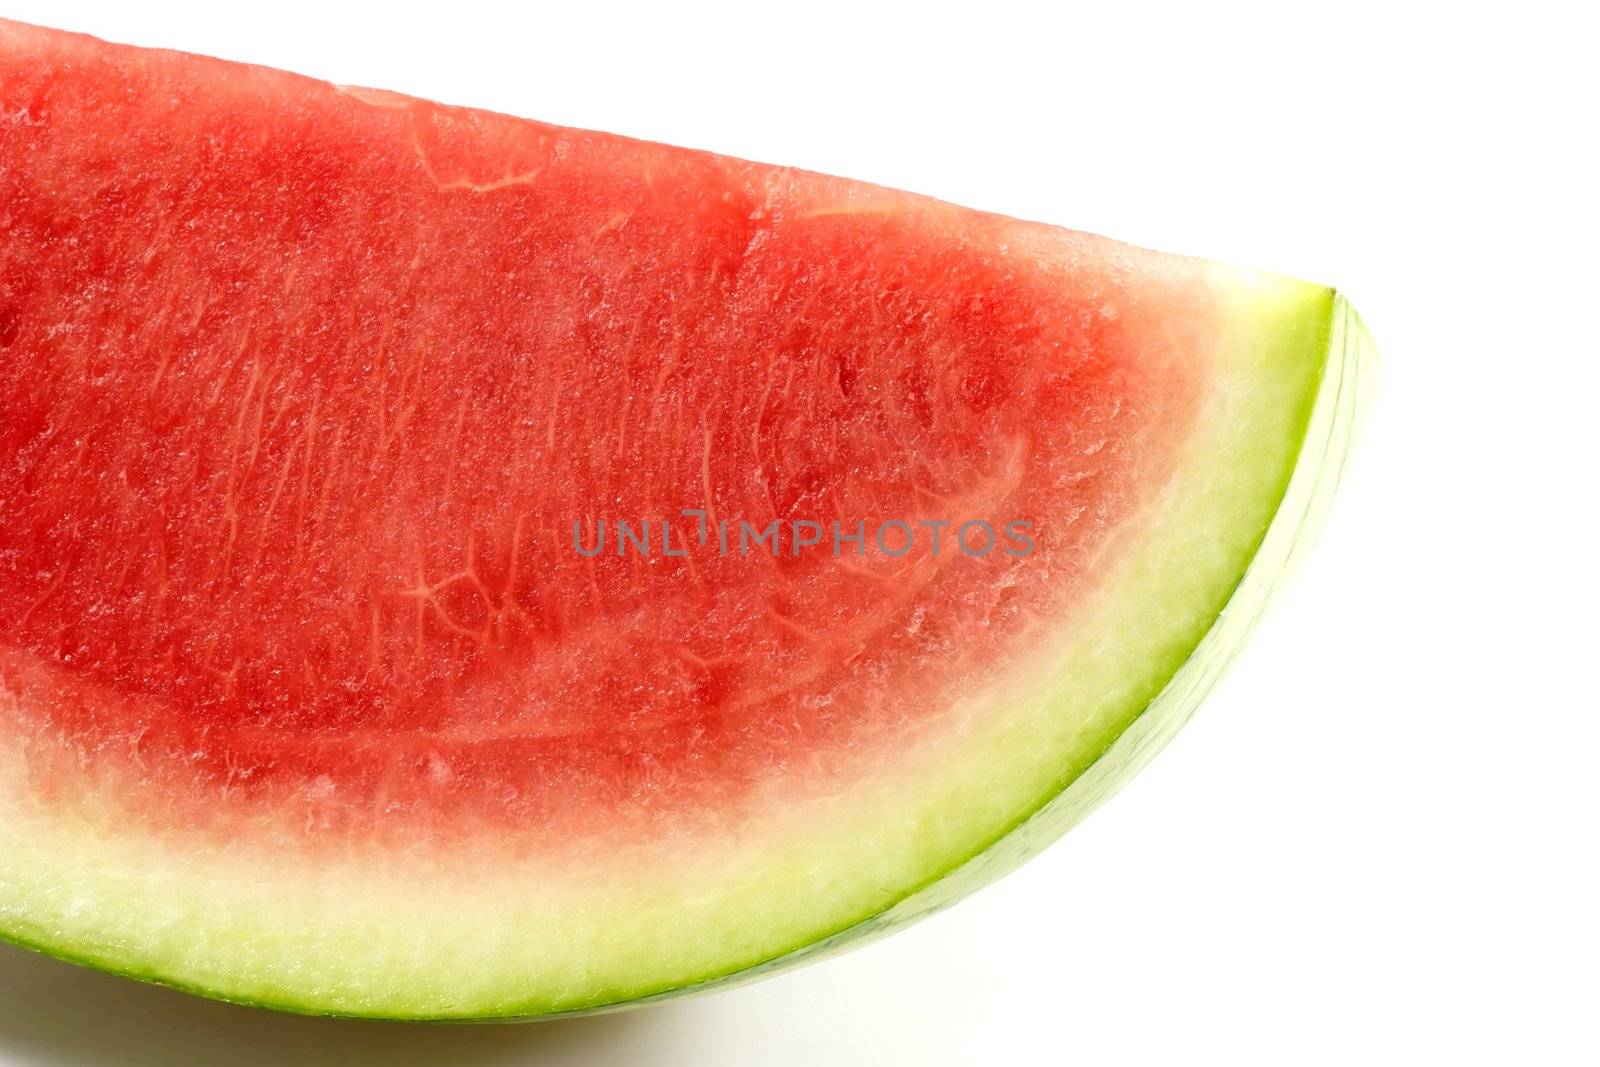 Piece of Watermelon by Teamarbeit